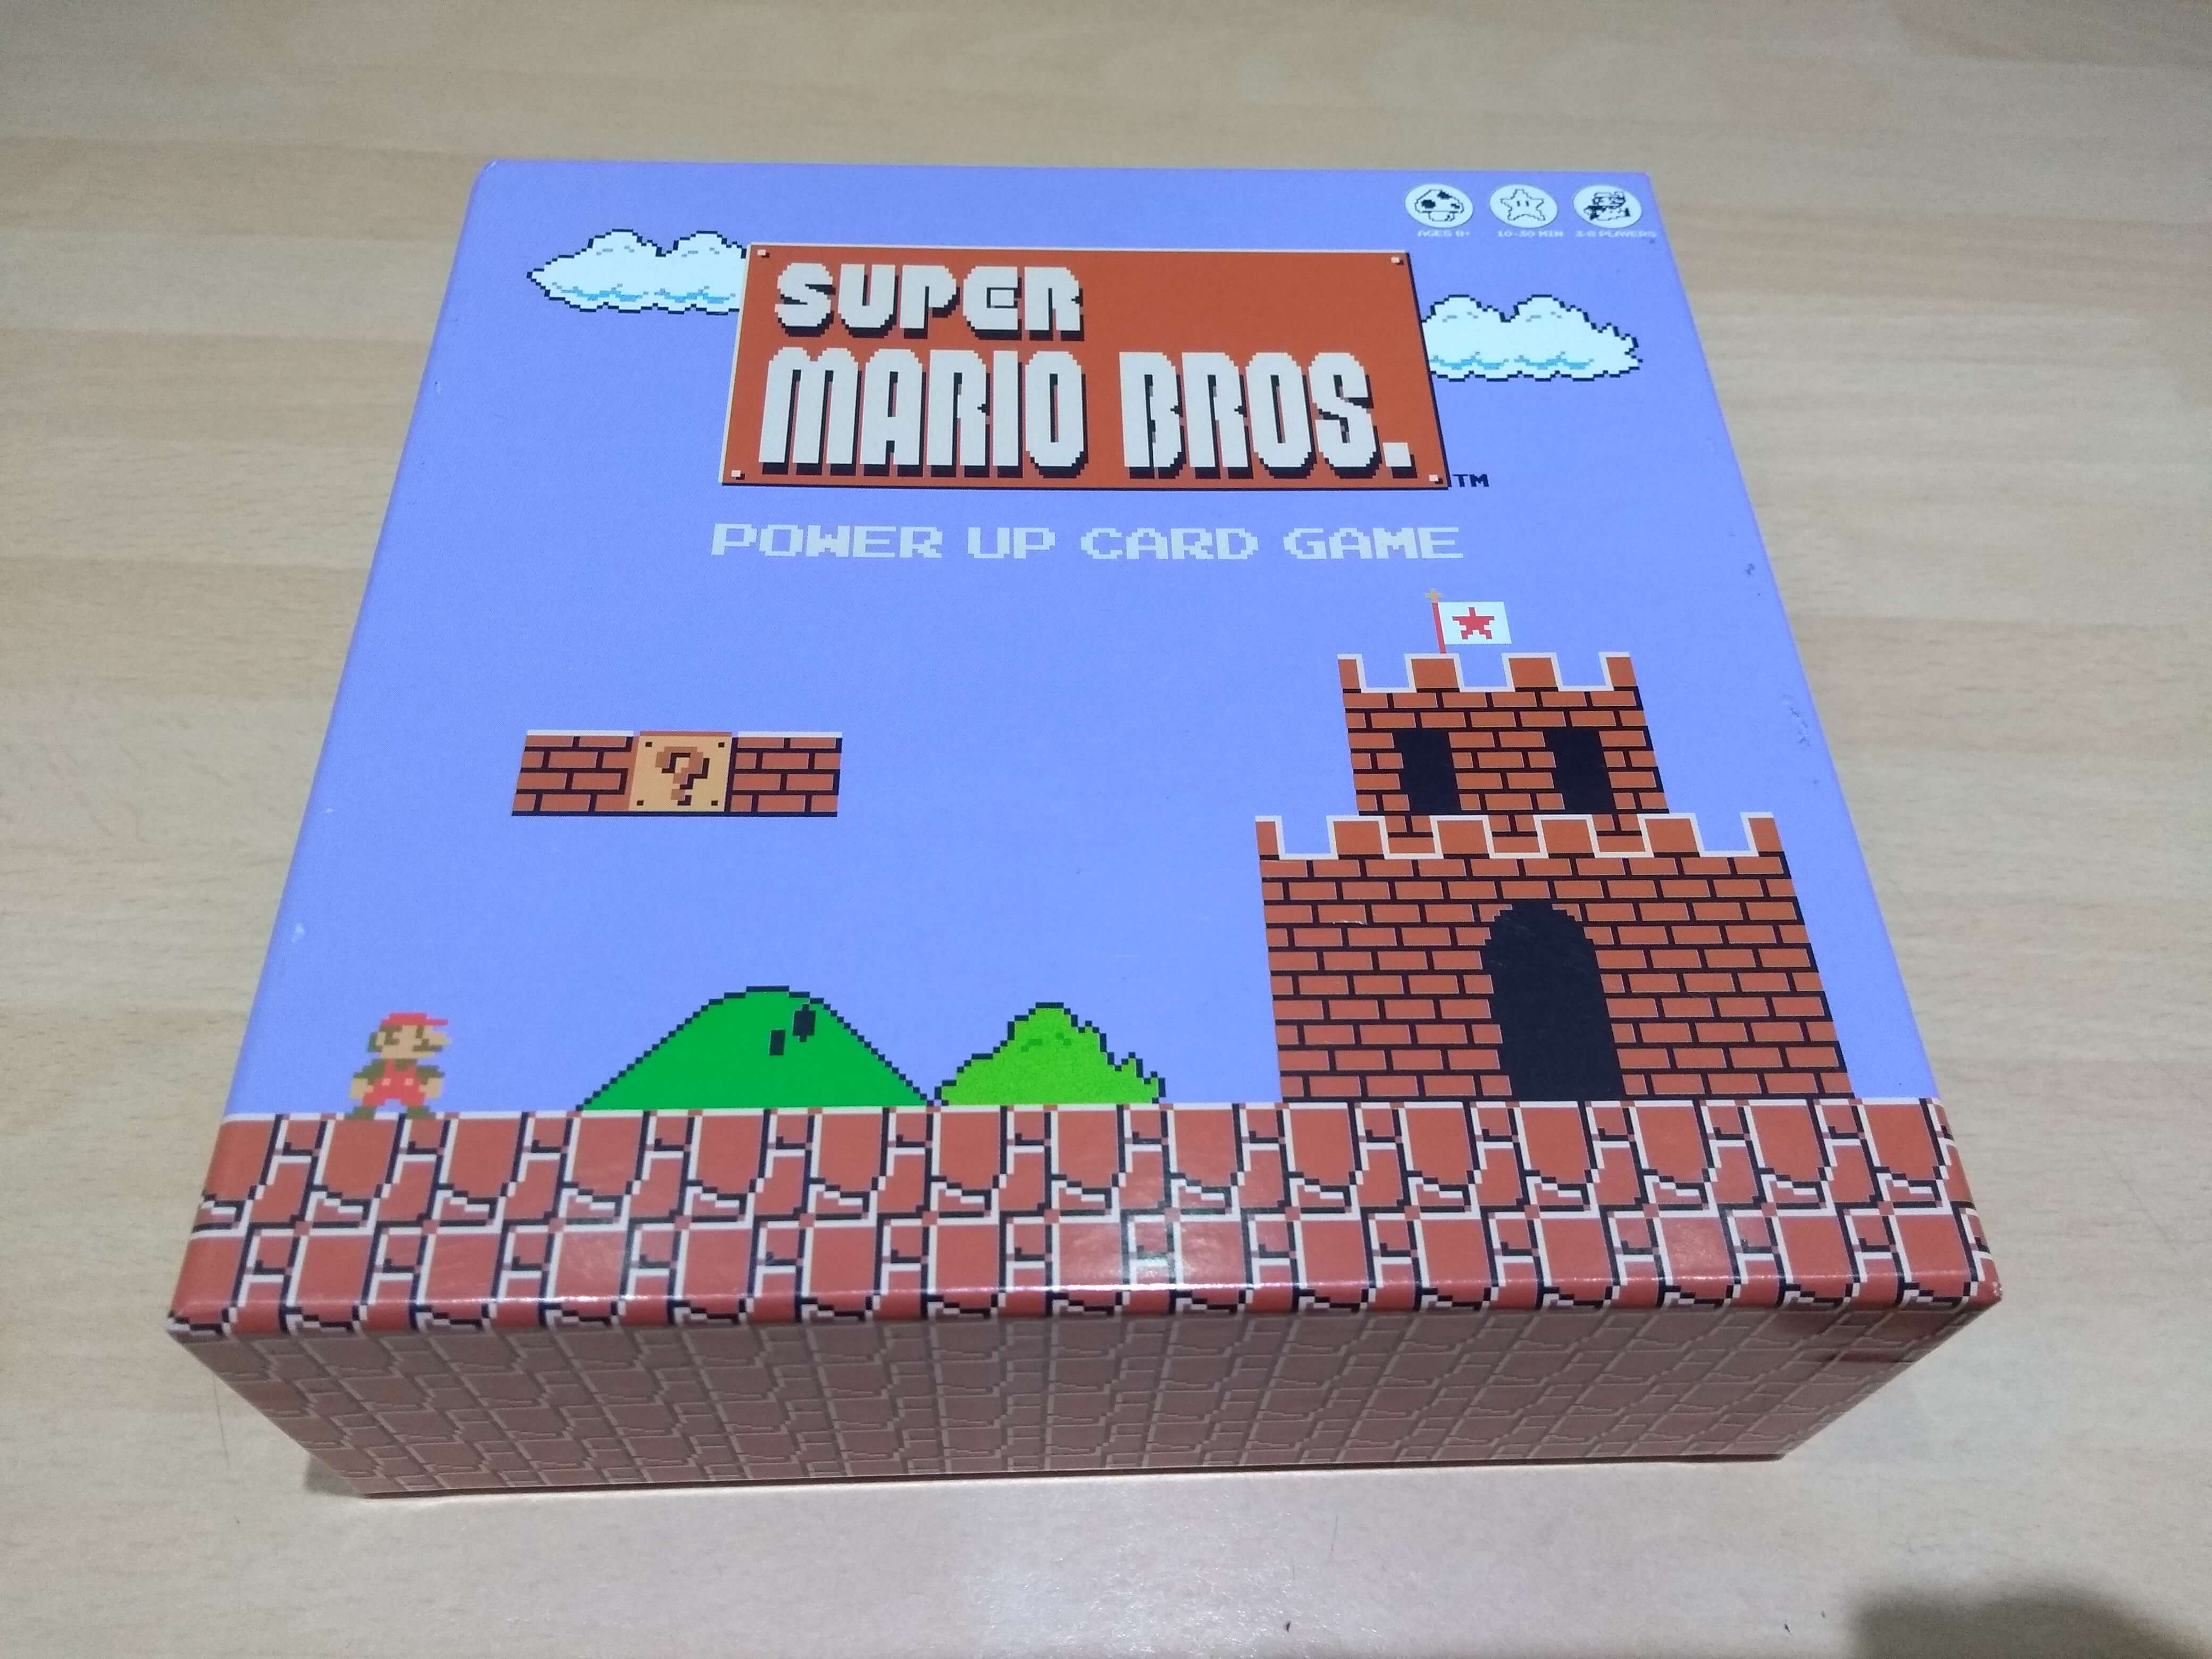 Super Mario Bros. The Powerup Card Game